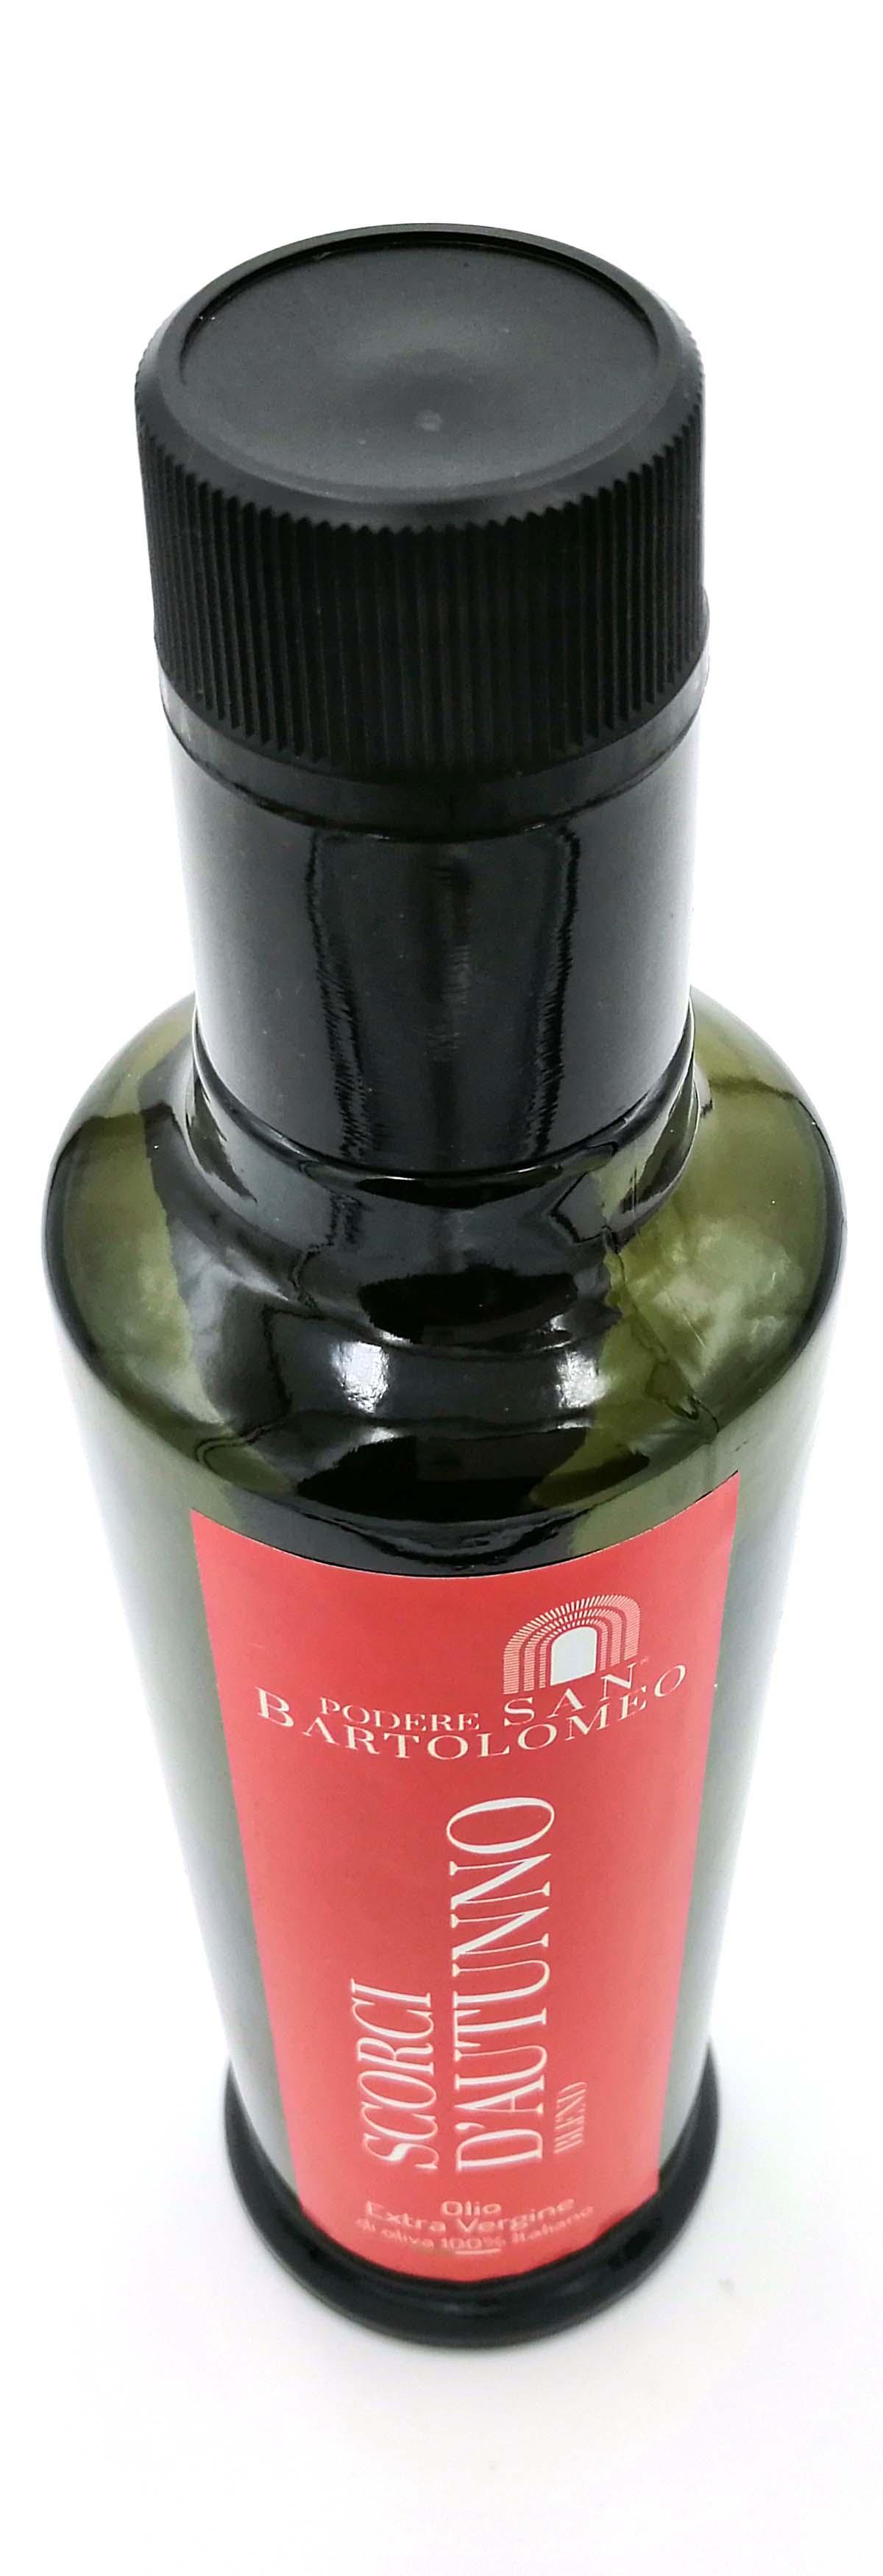 Olio Extravergine di Oliva SCORCI D'AUTUNNO - Fruttato Leggero (Bott. 250 ml) : il nostro blend a prevalenza di cultivar Leccino, perfetto per l'alimentazione di bambini e bebè.